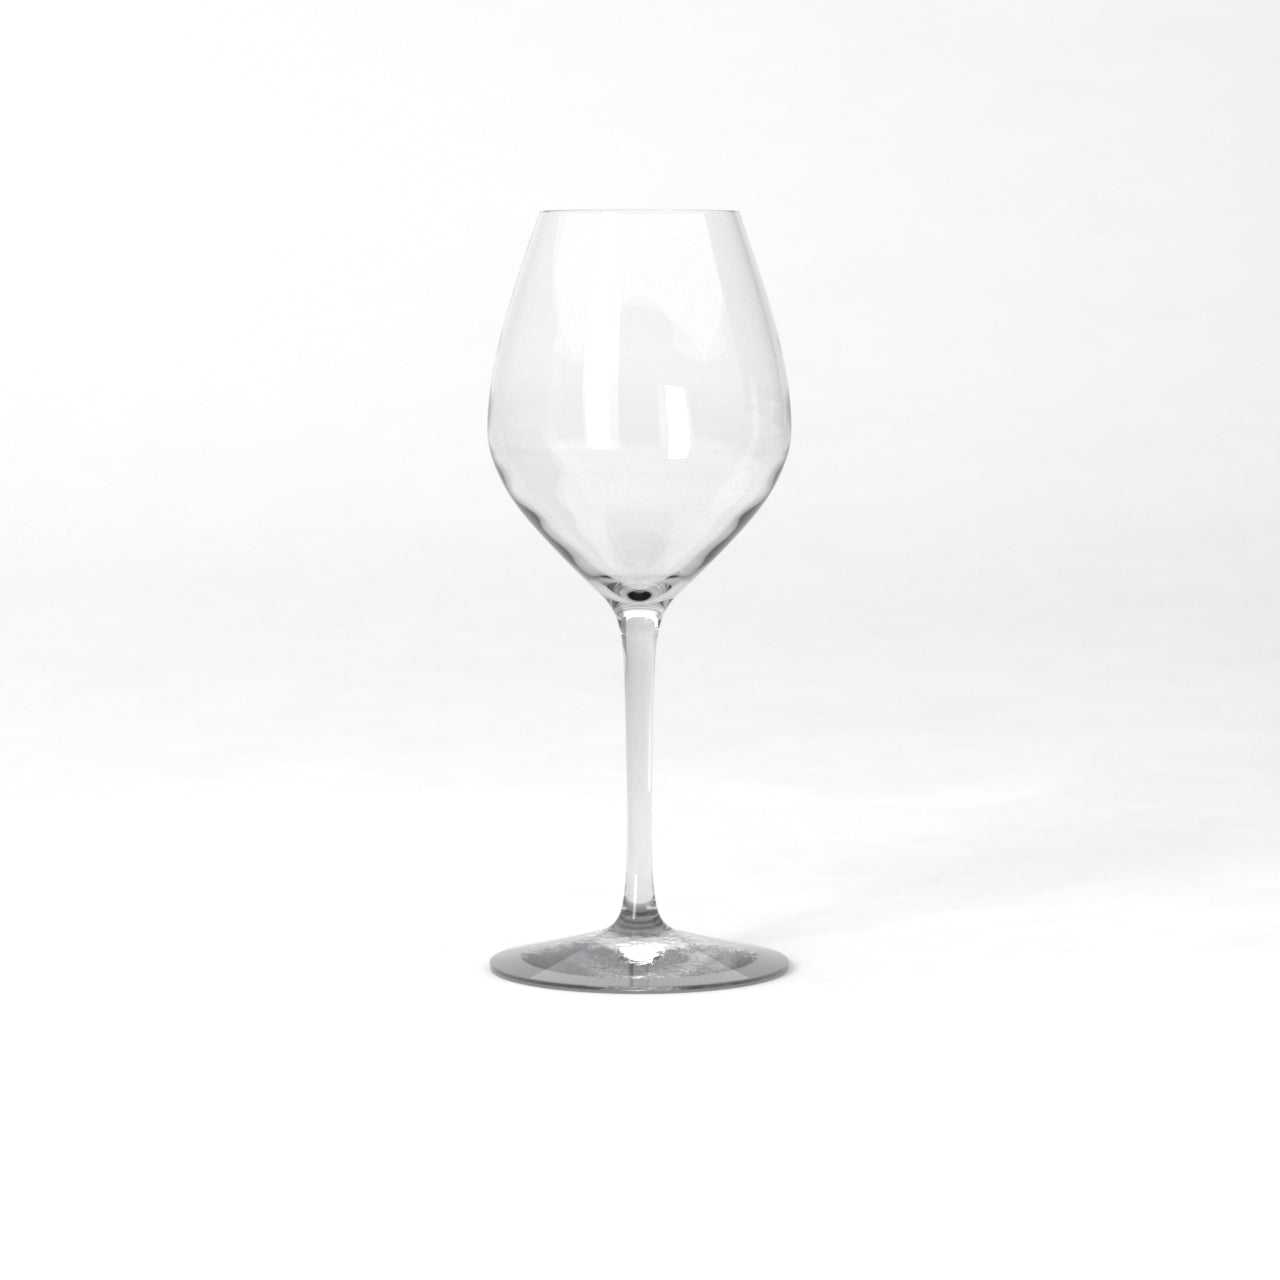 Senses Mature white wine glass